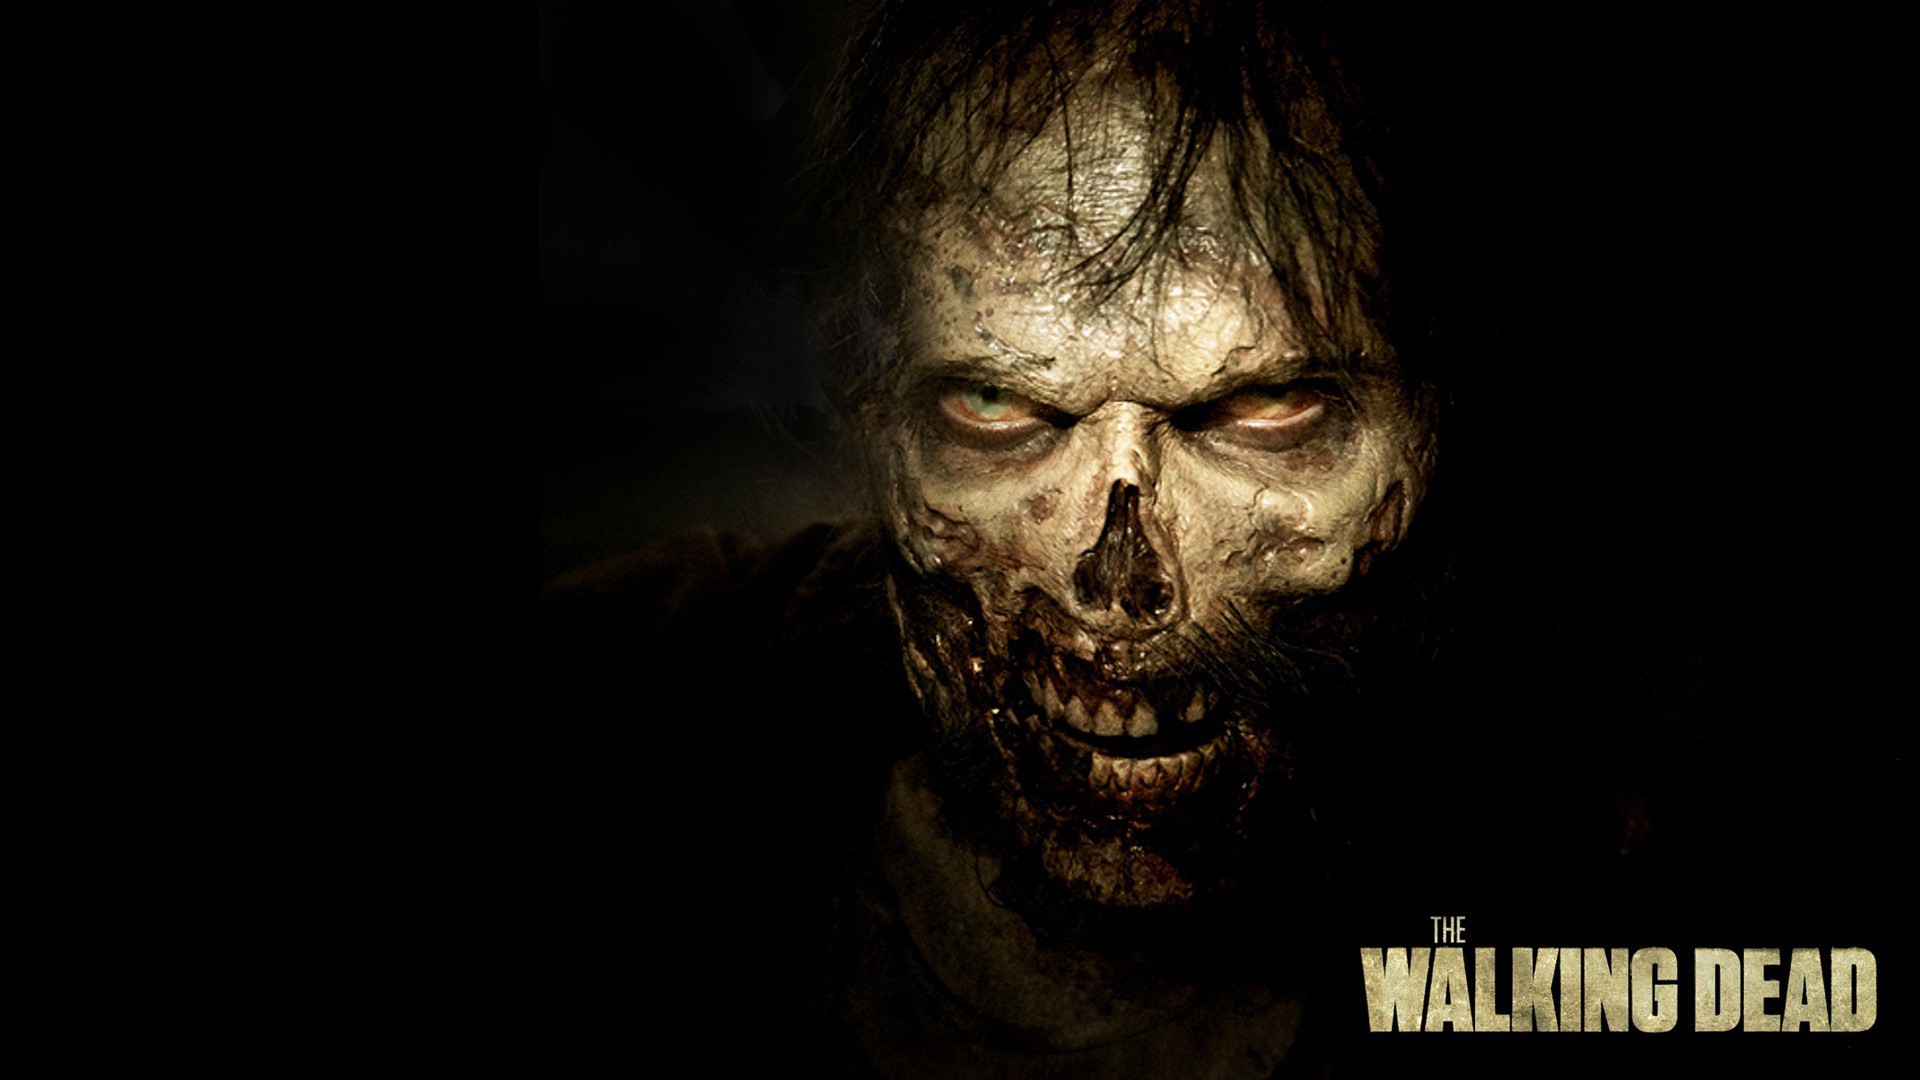 The Walking Dead Season 3 Image HD   New HD Wallpapers